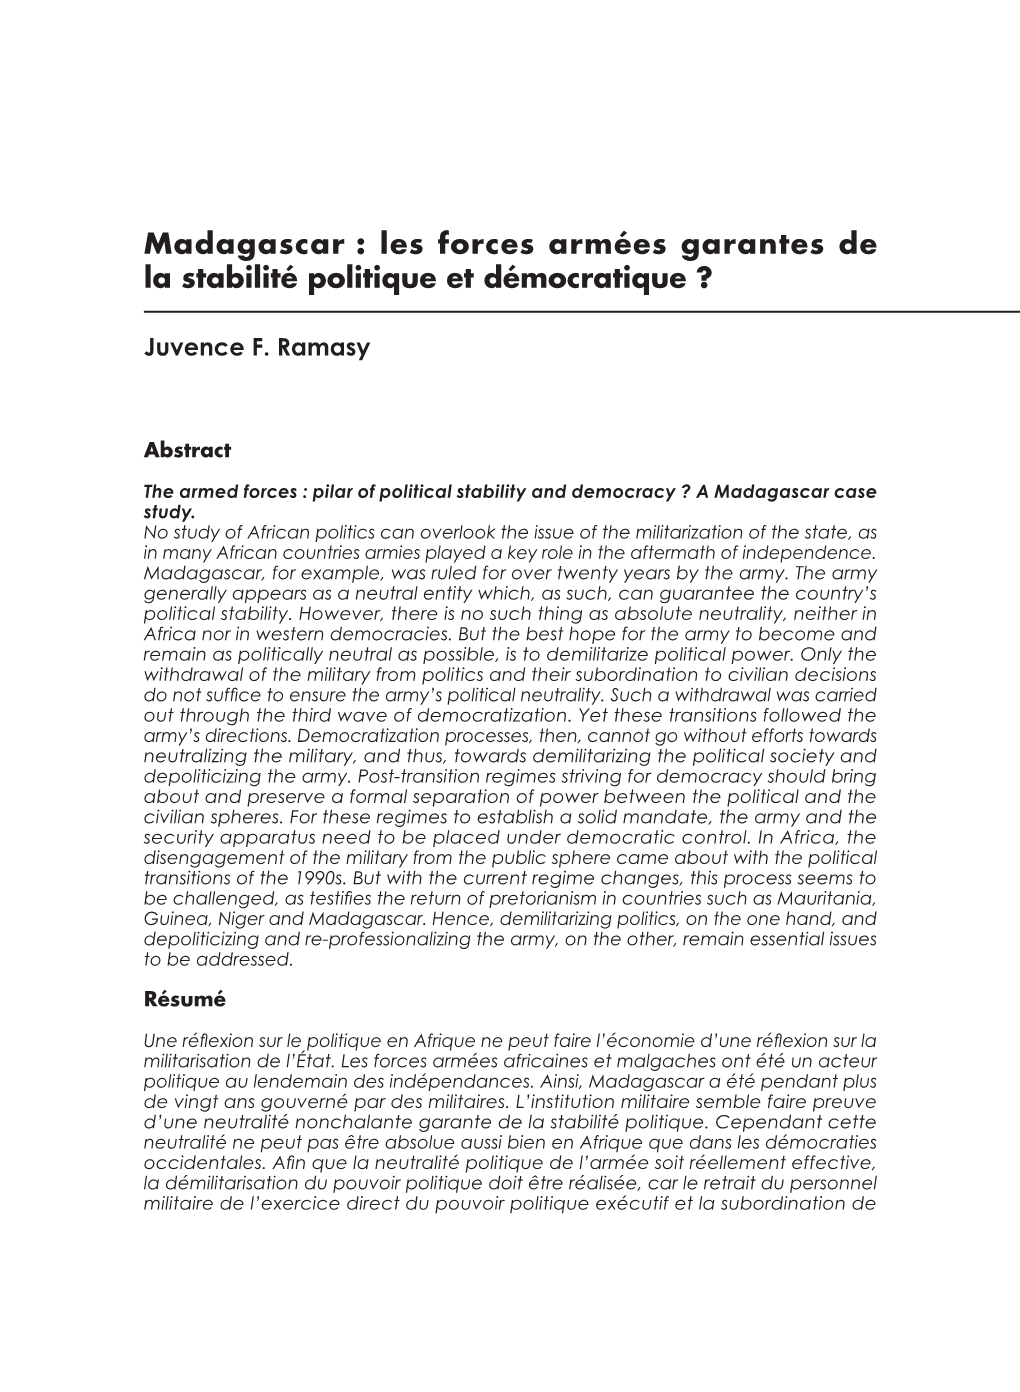 Madagascar : Les Forces Armées Garantes De La Stabilité Politique Et Démocratique ?